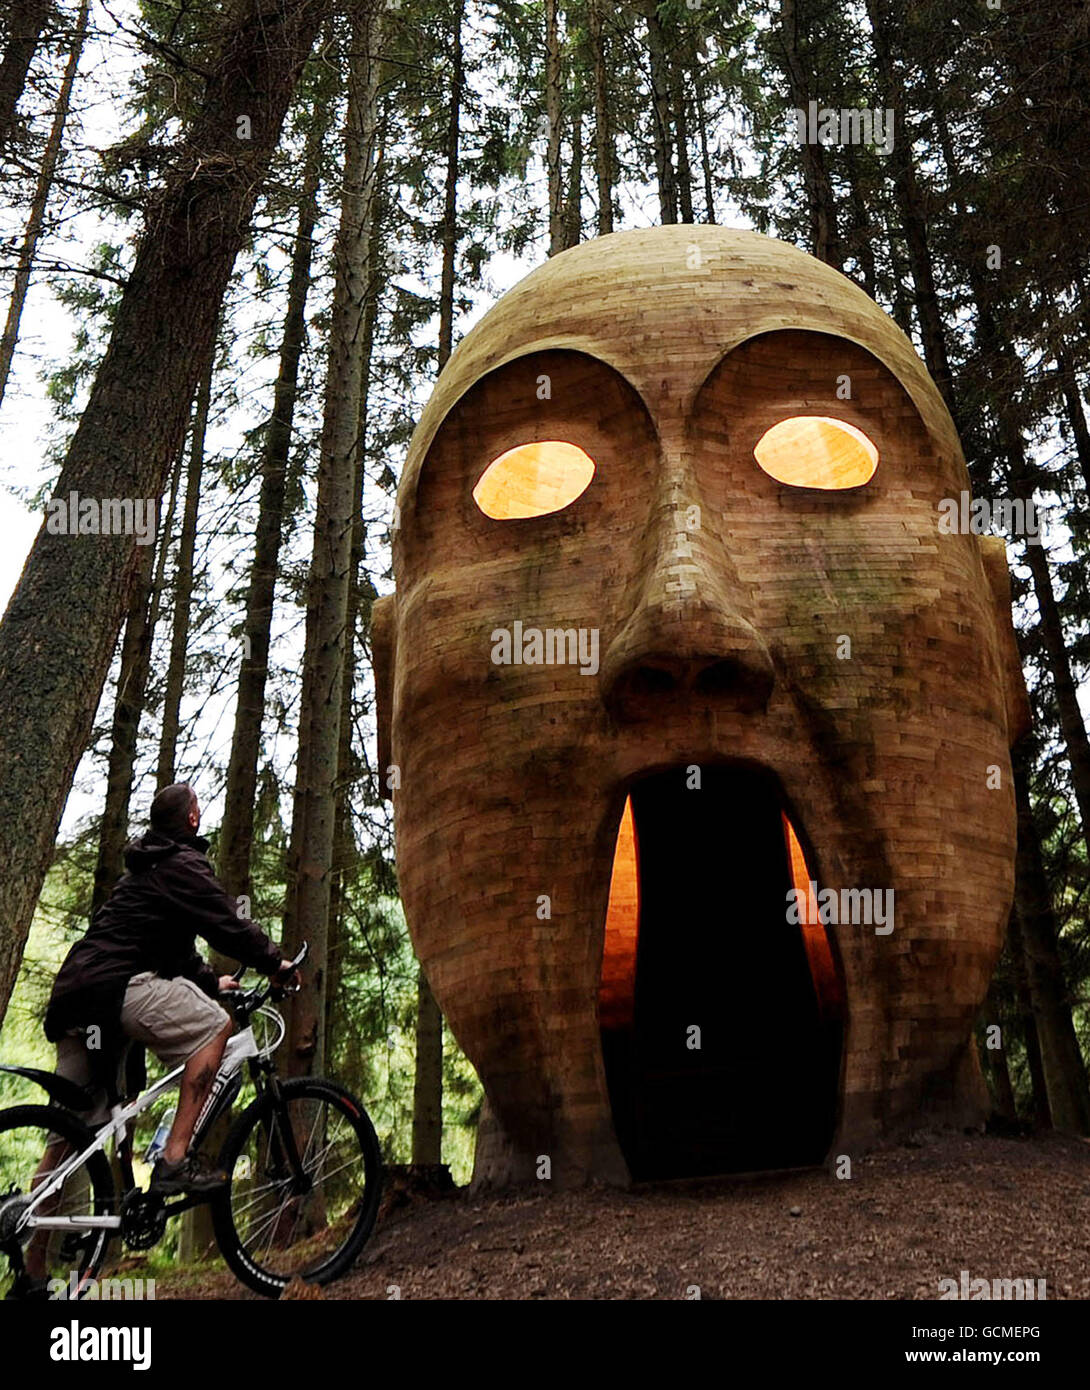 Die Skulptur Silvas Capitalis (latein für Waldkopf) von Simparch steht im Keider-Wald in Norhthumberland, der für Wanderer und Besucher konzipiert wurde, um sich auszuruhen und vor den Elementen zu schützen. Stockfoto